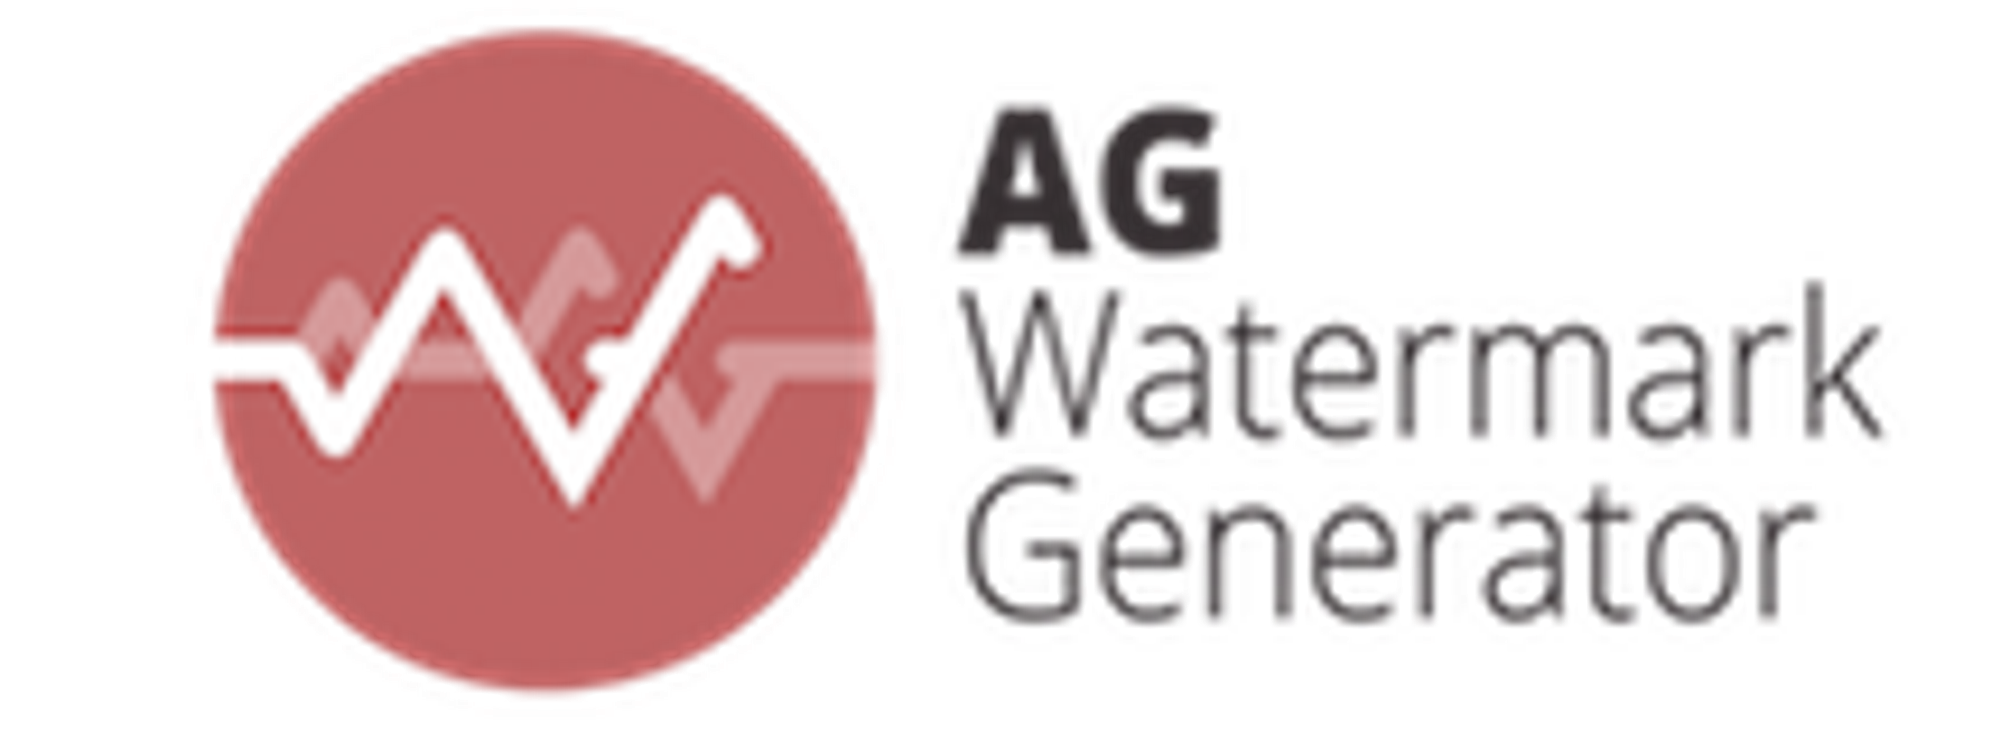 AG Watermark Generator